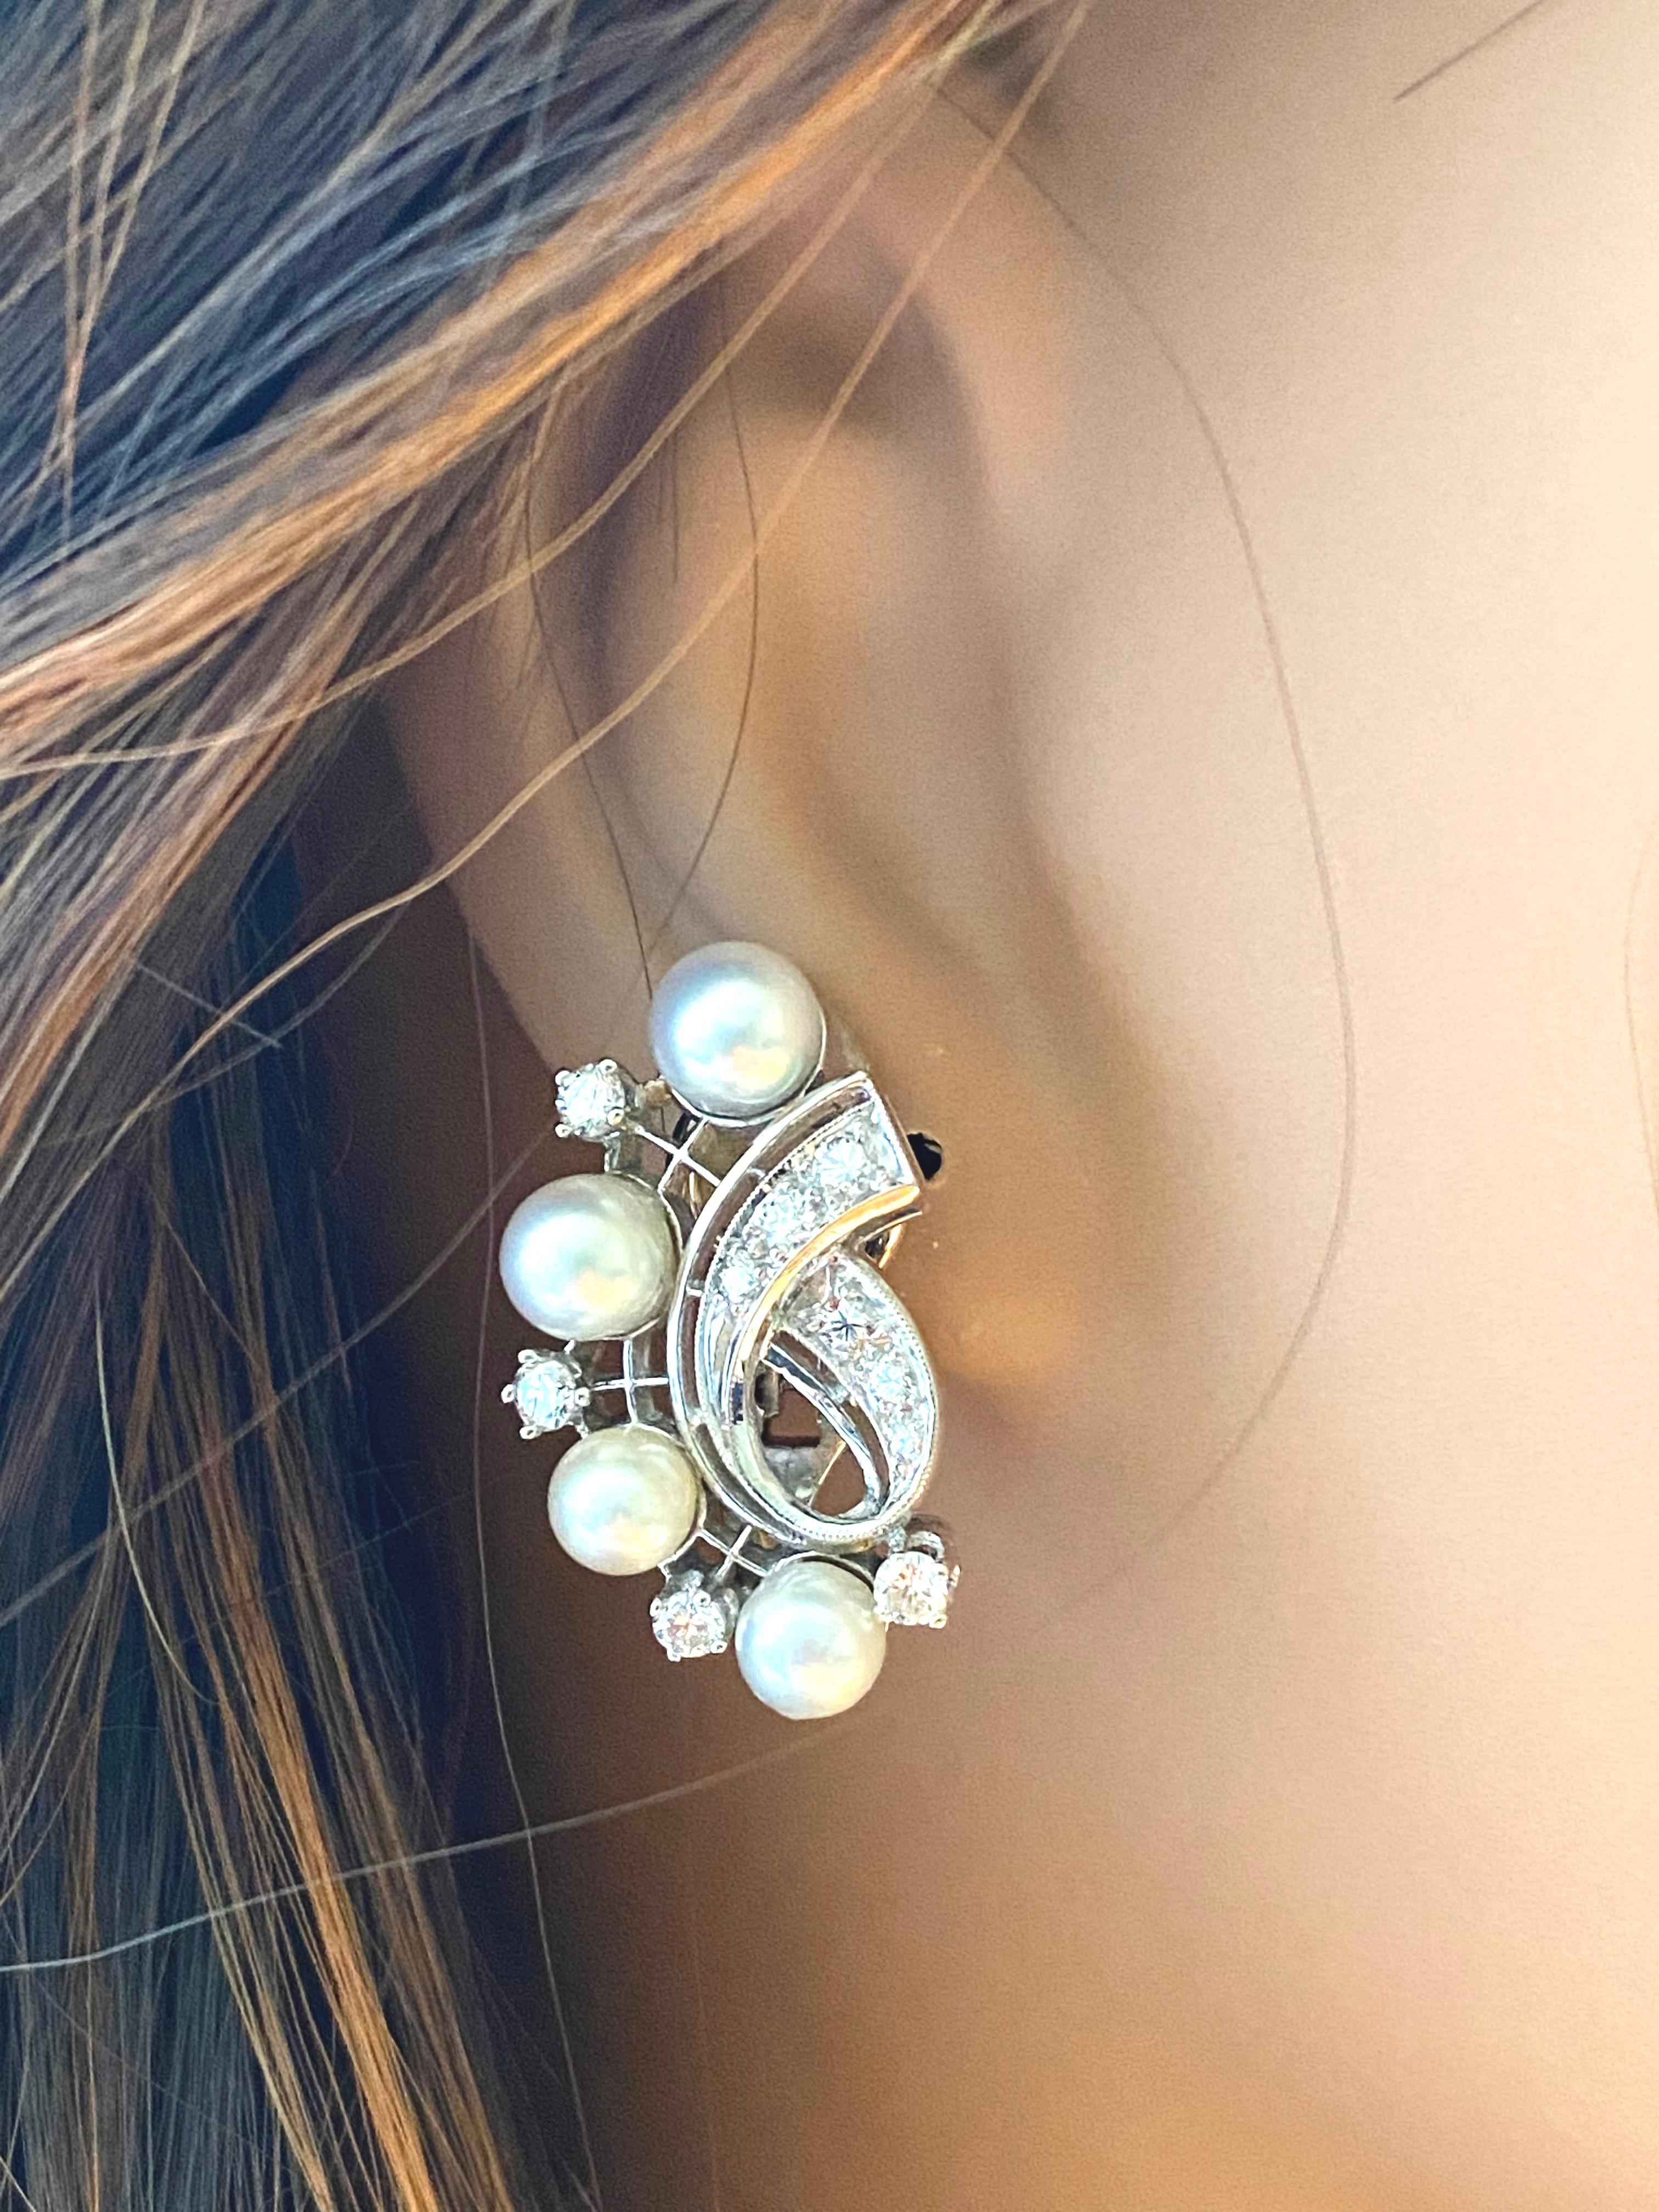 Wir stellen Ihnen unsere exquisiten Vintage-Ohrringe aus 14 Karat Weißgold mit Diamanten und Perlen (0,75 Karat) vor - ein zeitloses Stück, das Eleganz und Raffinesse ausstrahlt. Diese 1-Zoll-Ohrringe sind eine perfekte Mischung aus Vintage-Charme